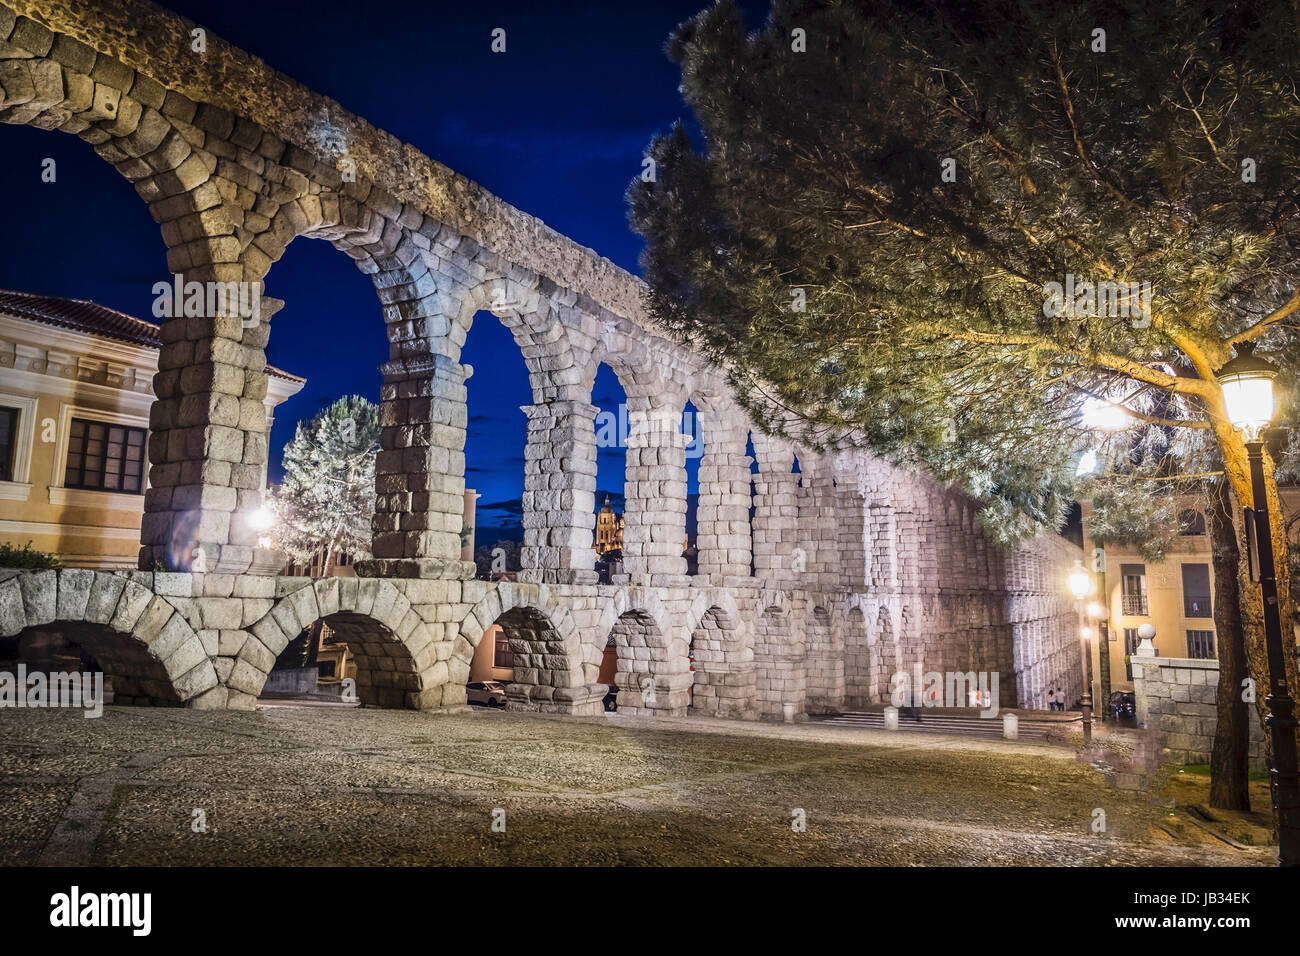 Vue partielle de l'aqueduc romain situé dans la ville de Ségovie la nuit , l'UNESCO World Heritage Site, Espagne Banque D'Images